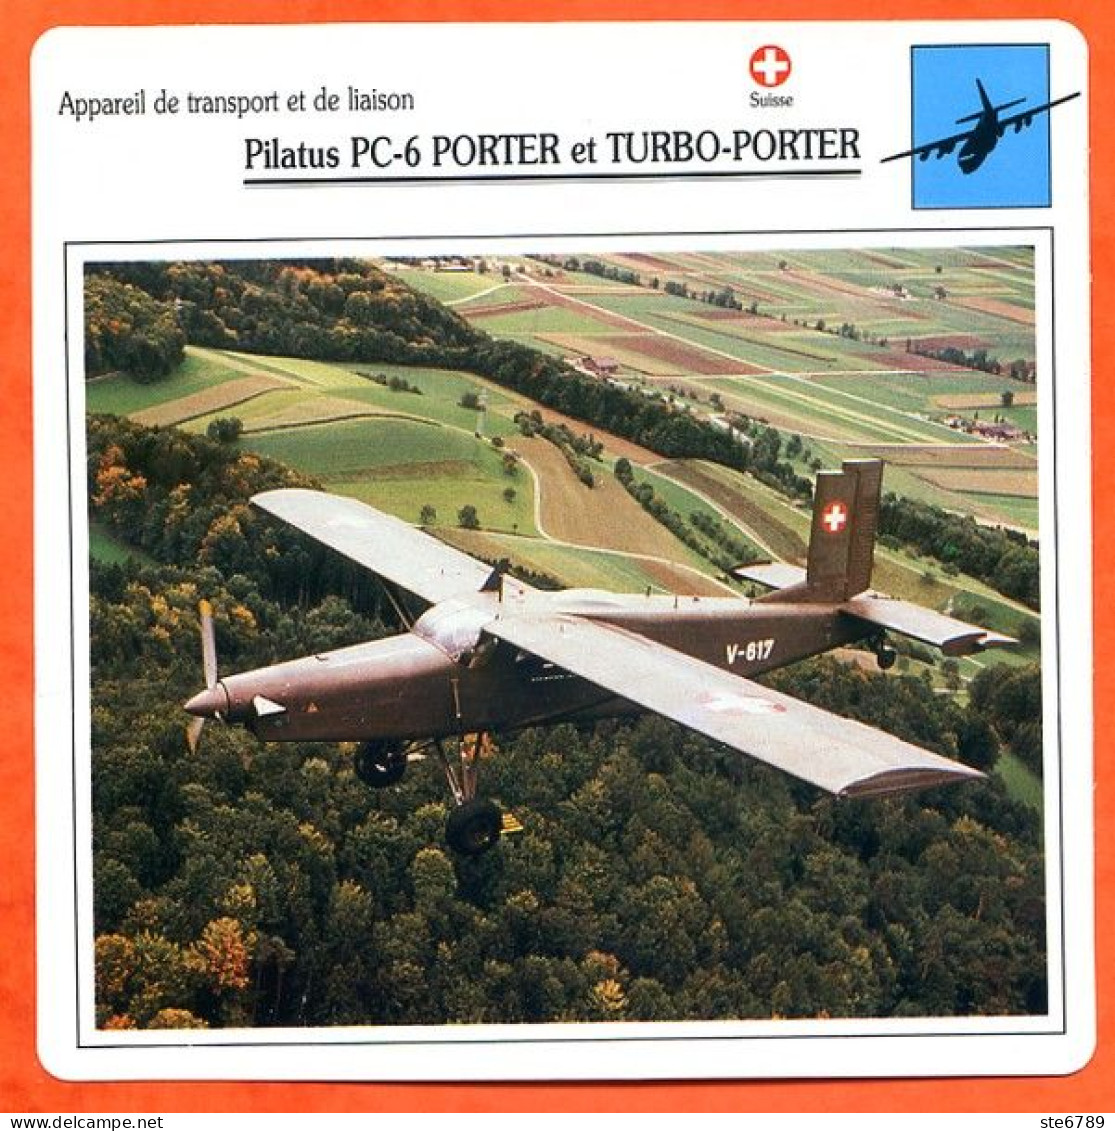 Fiche Aviation Pilatus PC 6 PORTER Et TURBO PORTER / Avion Transport Et Liaison Suisse  Avions - Avions